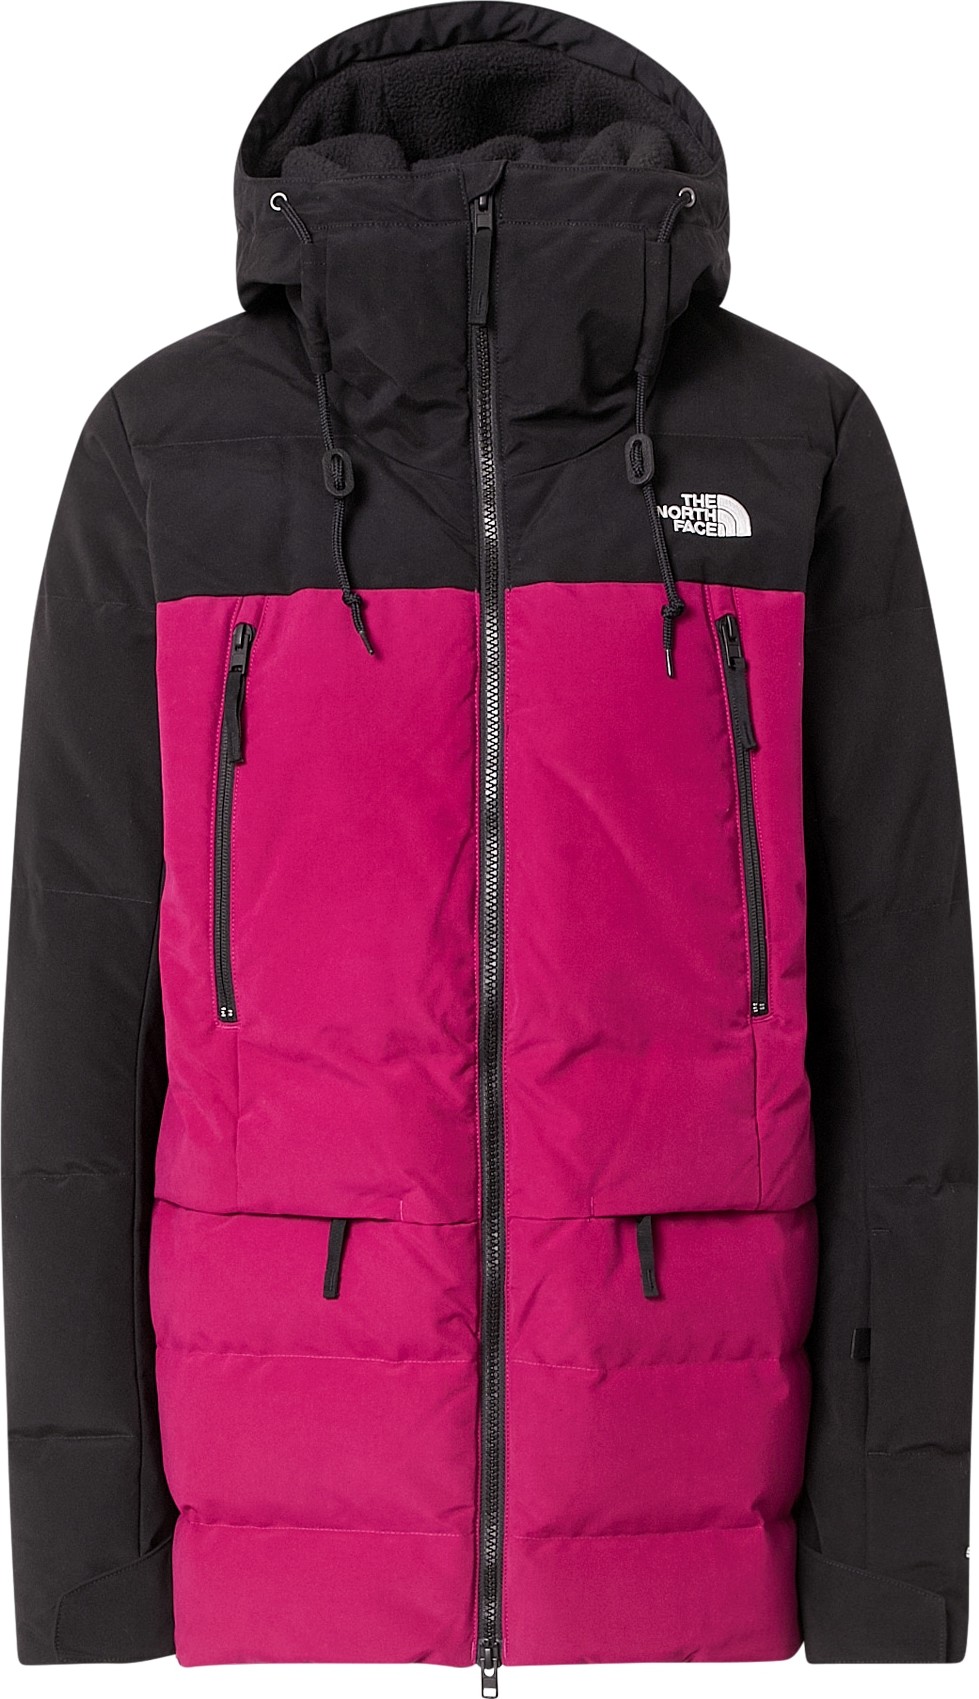 THE NORTH FACE Outdoorová bunda 'Pallie Down' tmavě růžová / černá / bílá